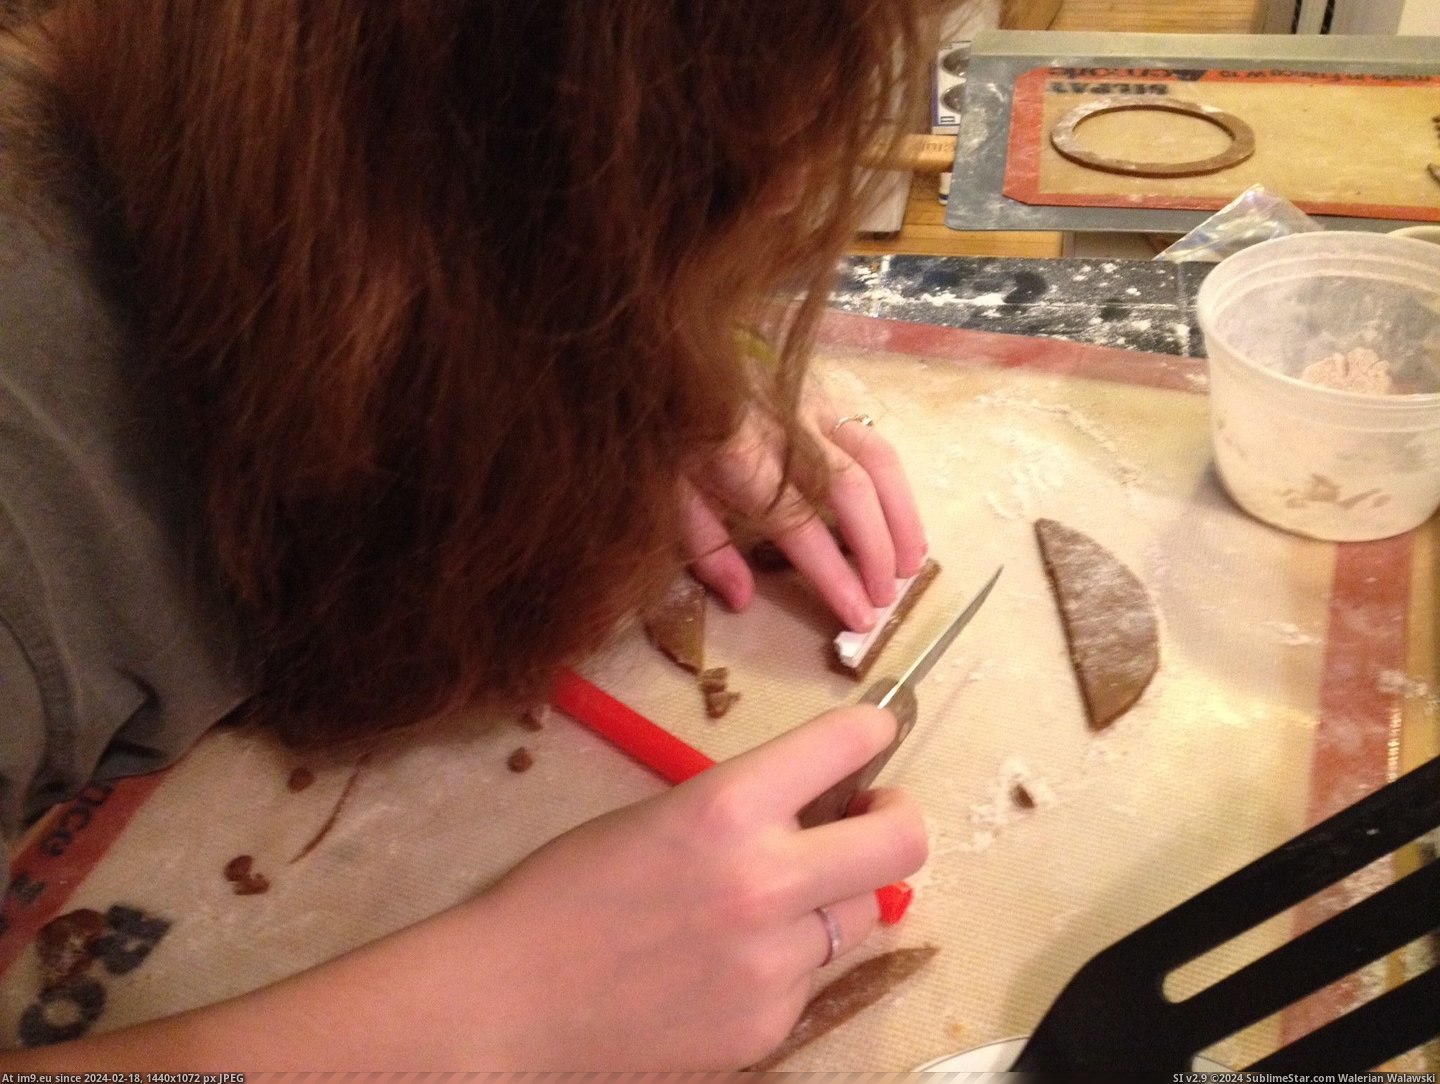 #Daughter #Tower #Pisa #Gingerbread #Leaning [Pics] My Daughter and I Made a Gingerbread Leaning Tower of Pisa 5 Pic. (Obraz z album My r/PICS favs))